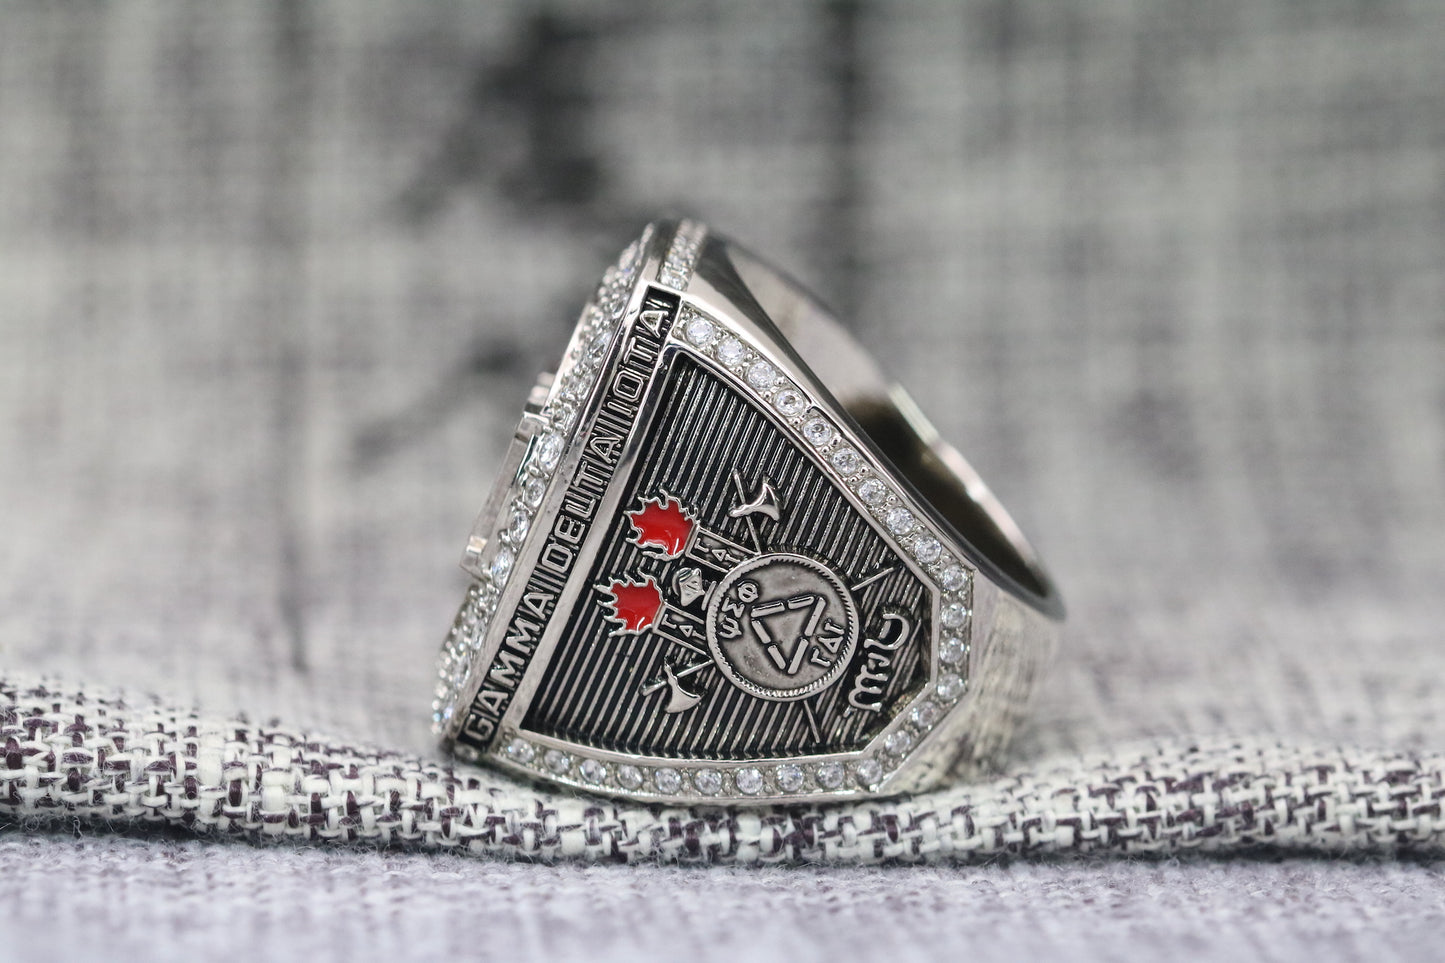 Gamma Delta Iota Fraternity Ring (ΓΔI) - Shine Series, Silver